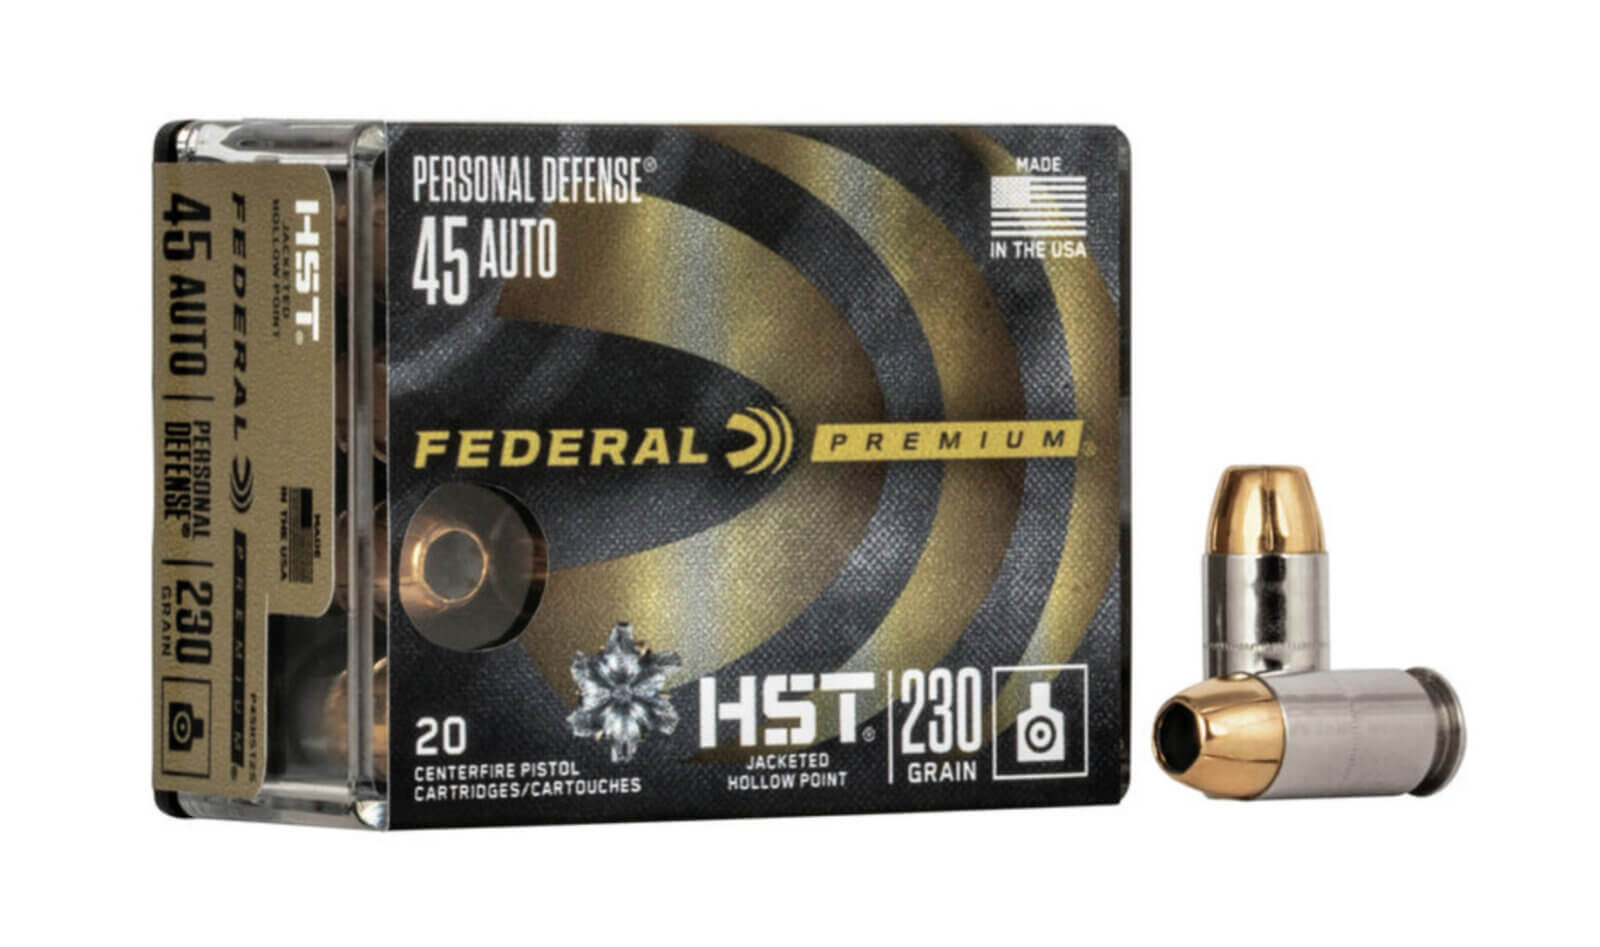 Federal Premium Personal Defense .45 Auto box of ammo